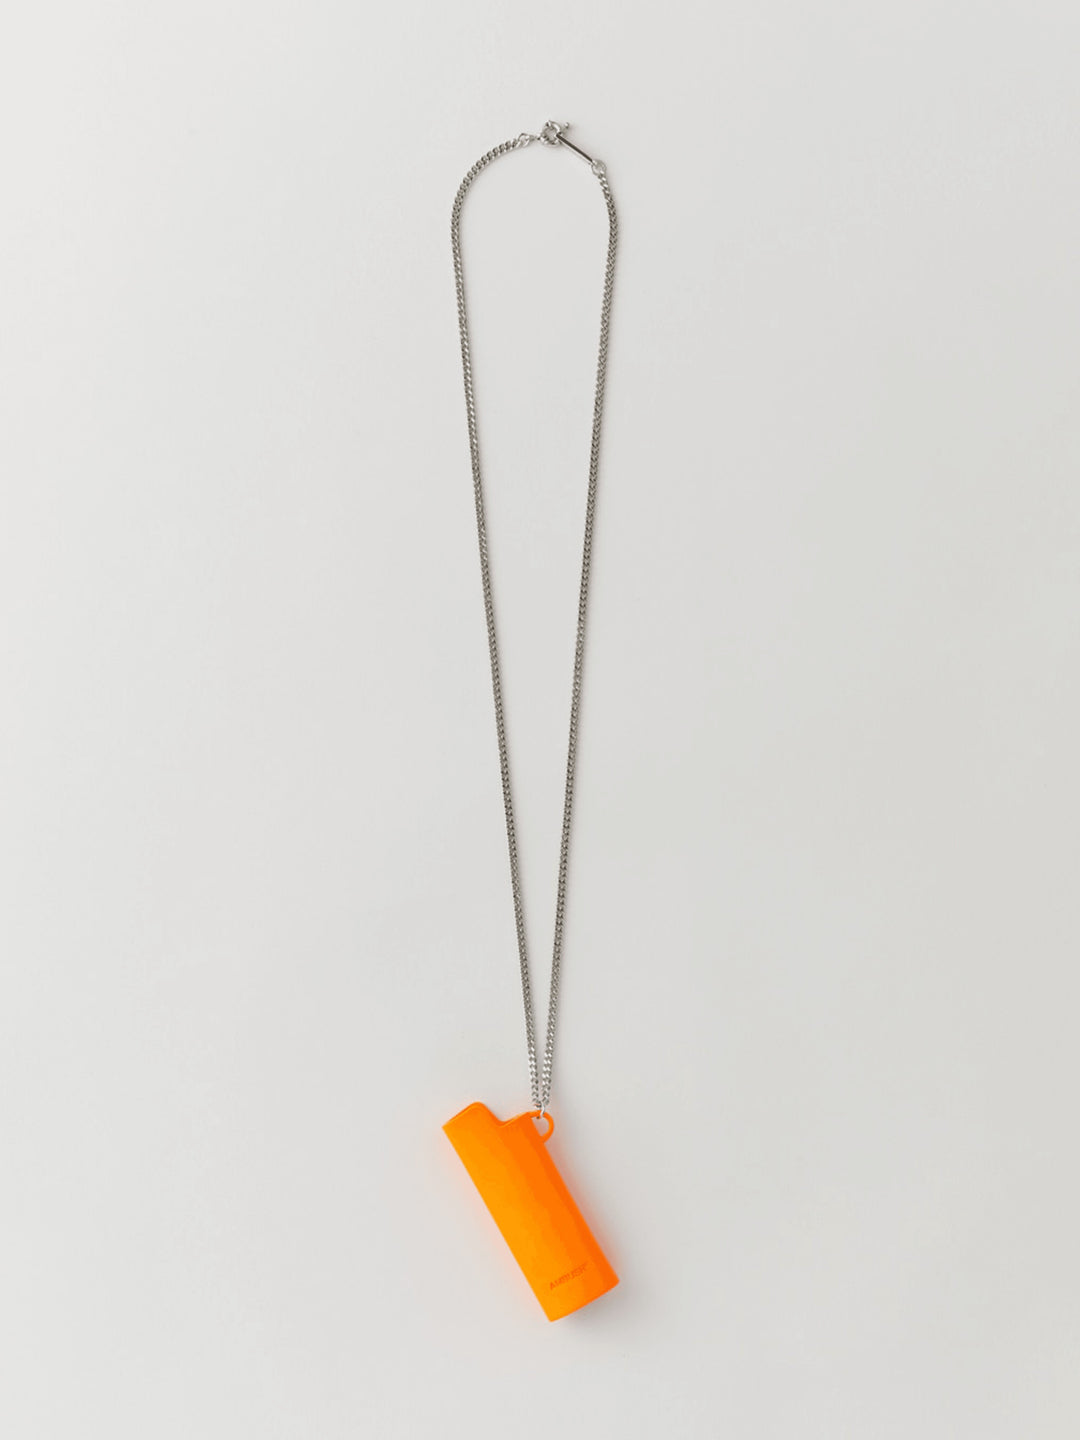 Ambush Lighter Case Necklace (Orange) Large Ambush